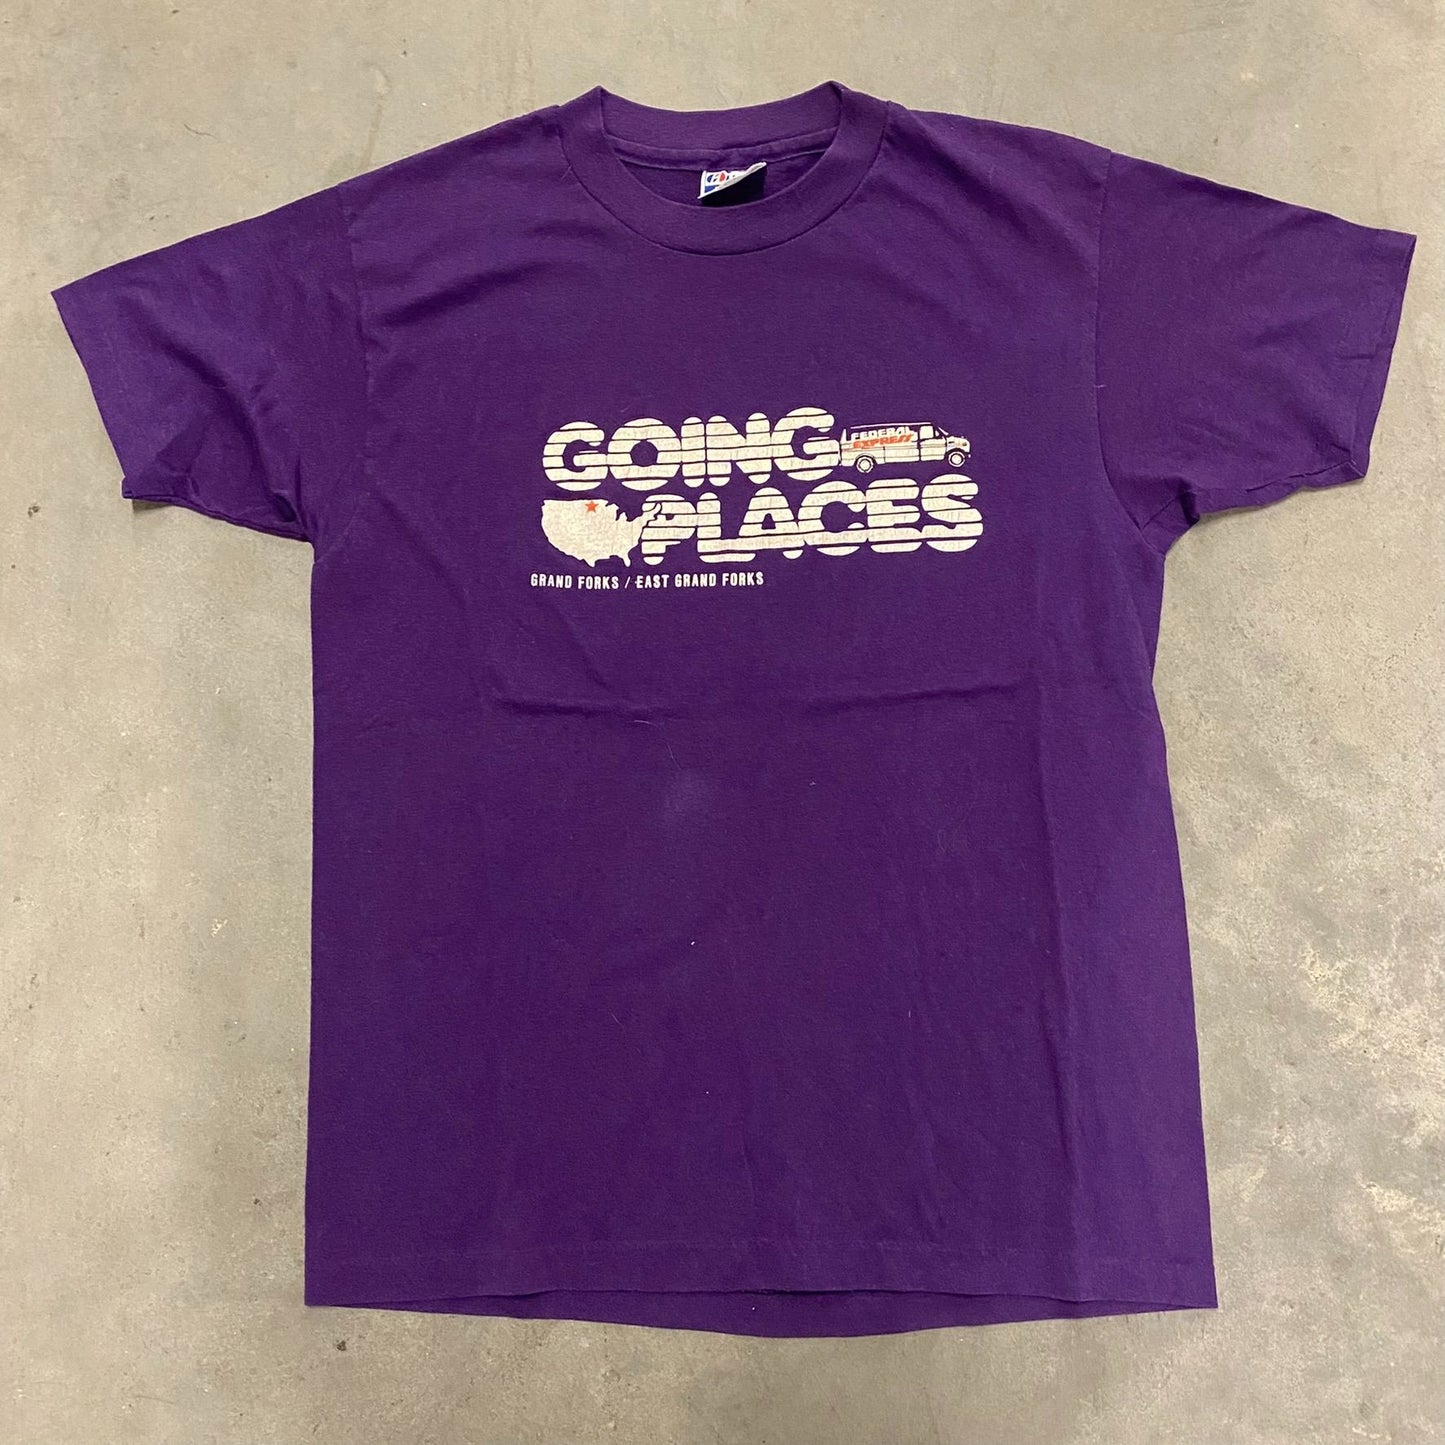 FedEx Going Places Vintage T-Shirt